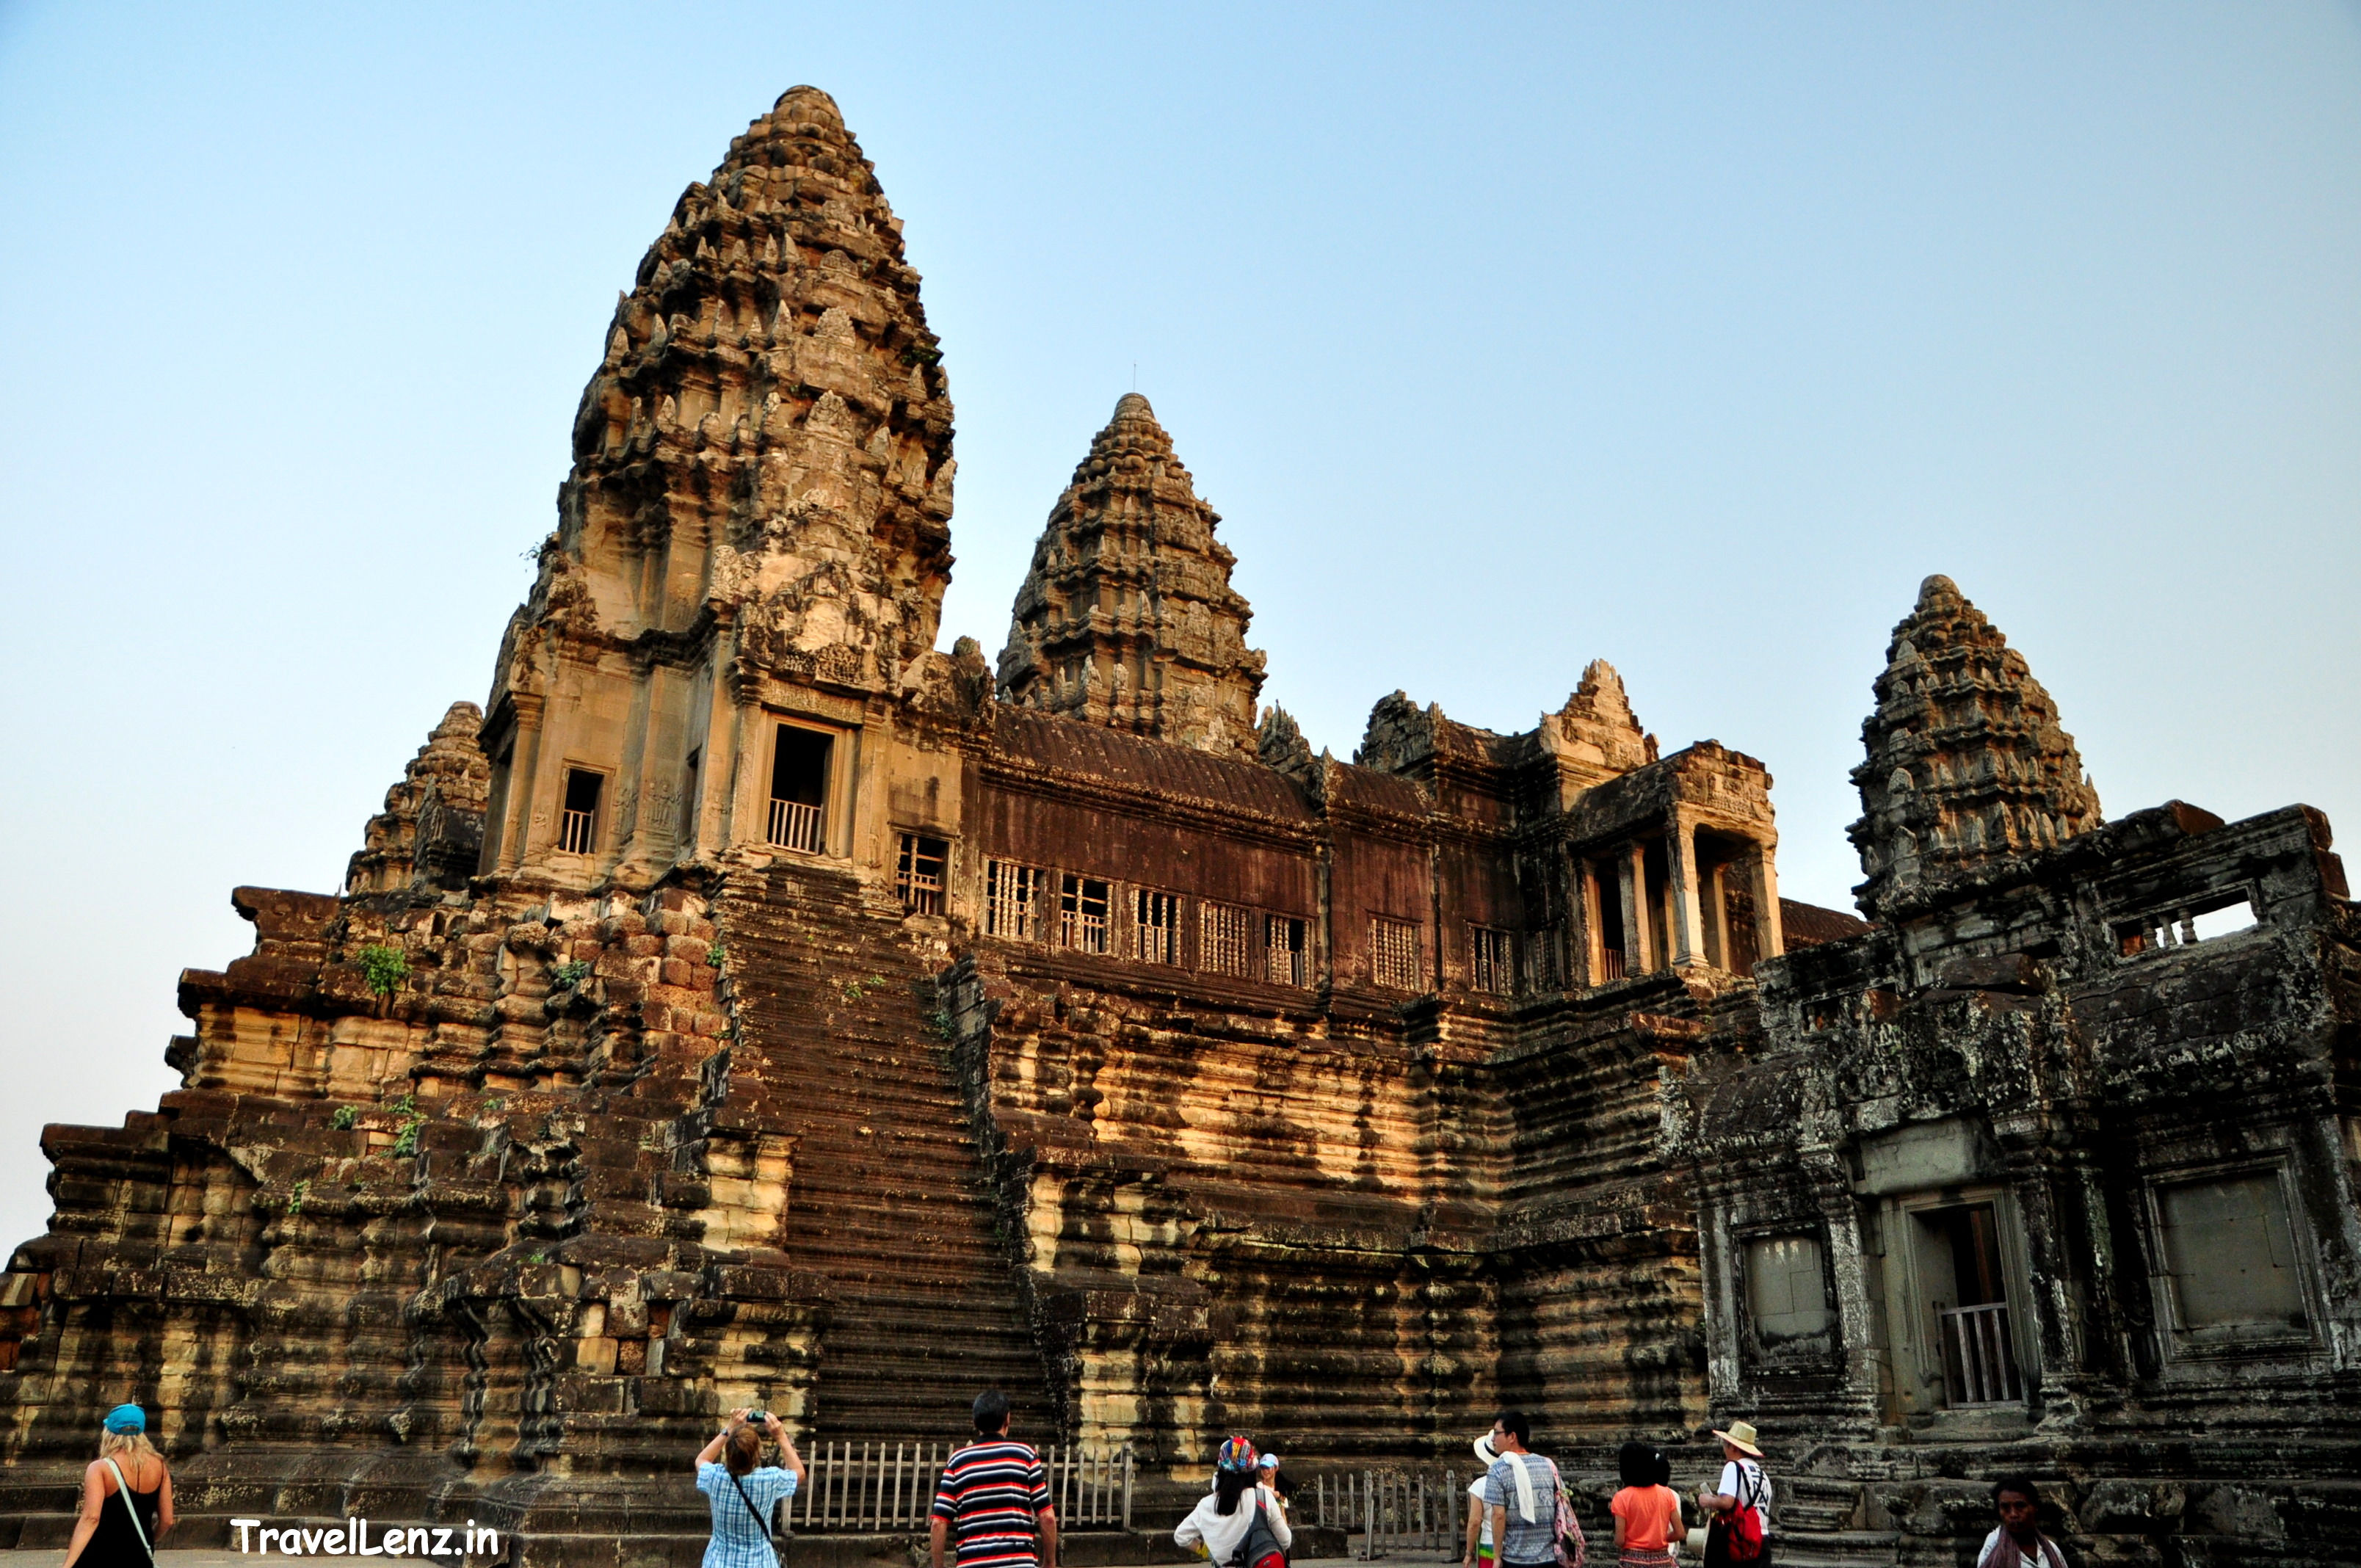 Angkor Wat towers